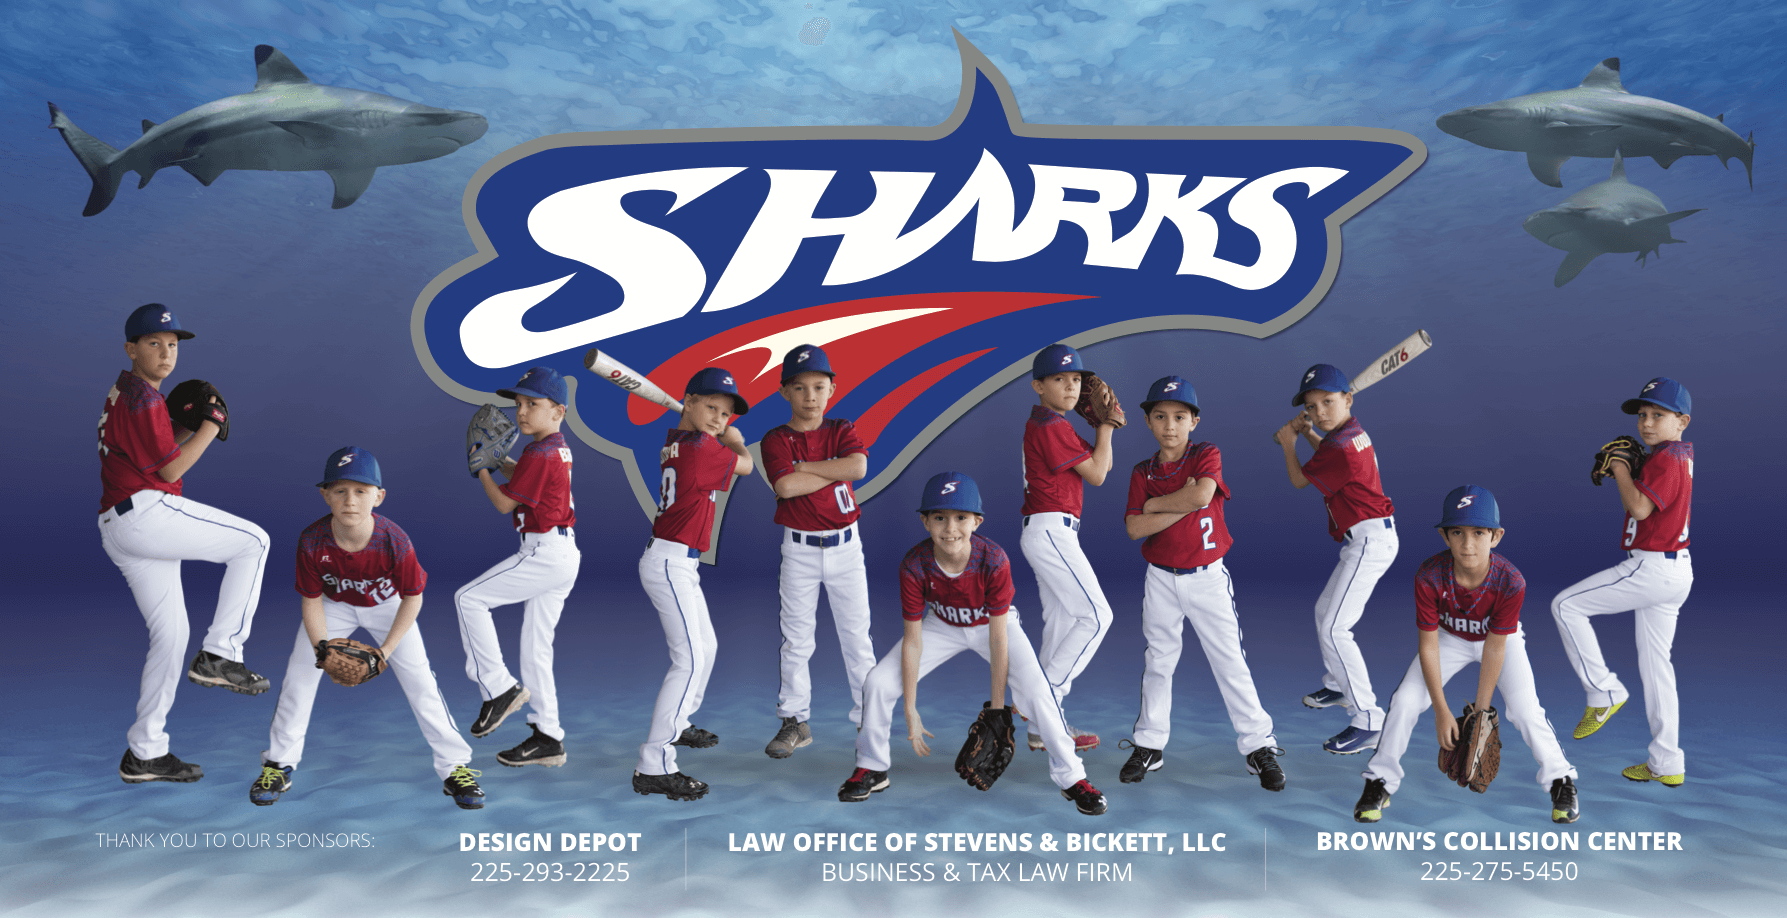 Sharks Baseball Logo - Sharks (Little League Baseball) - Torapath Technologies